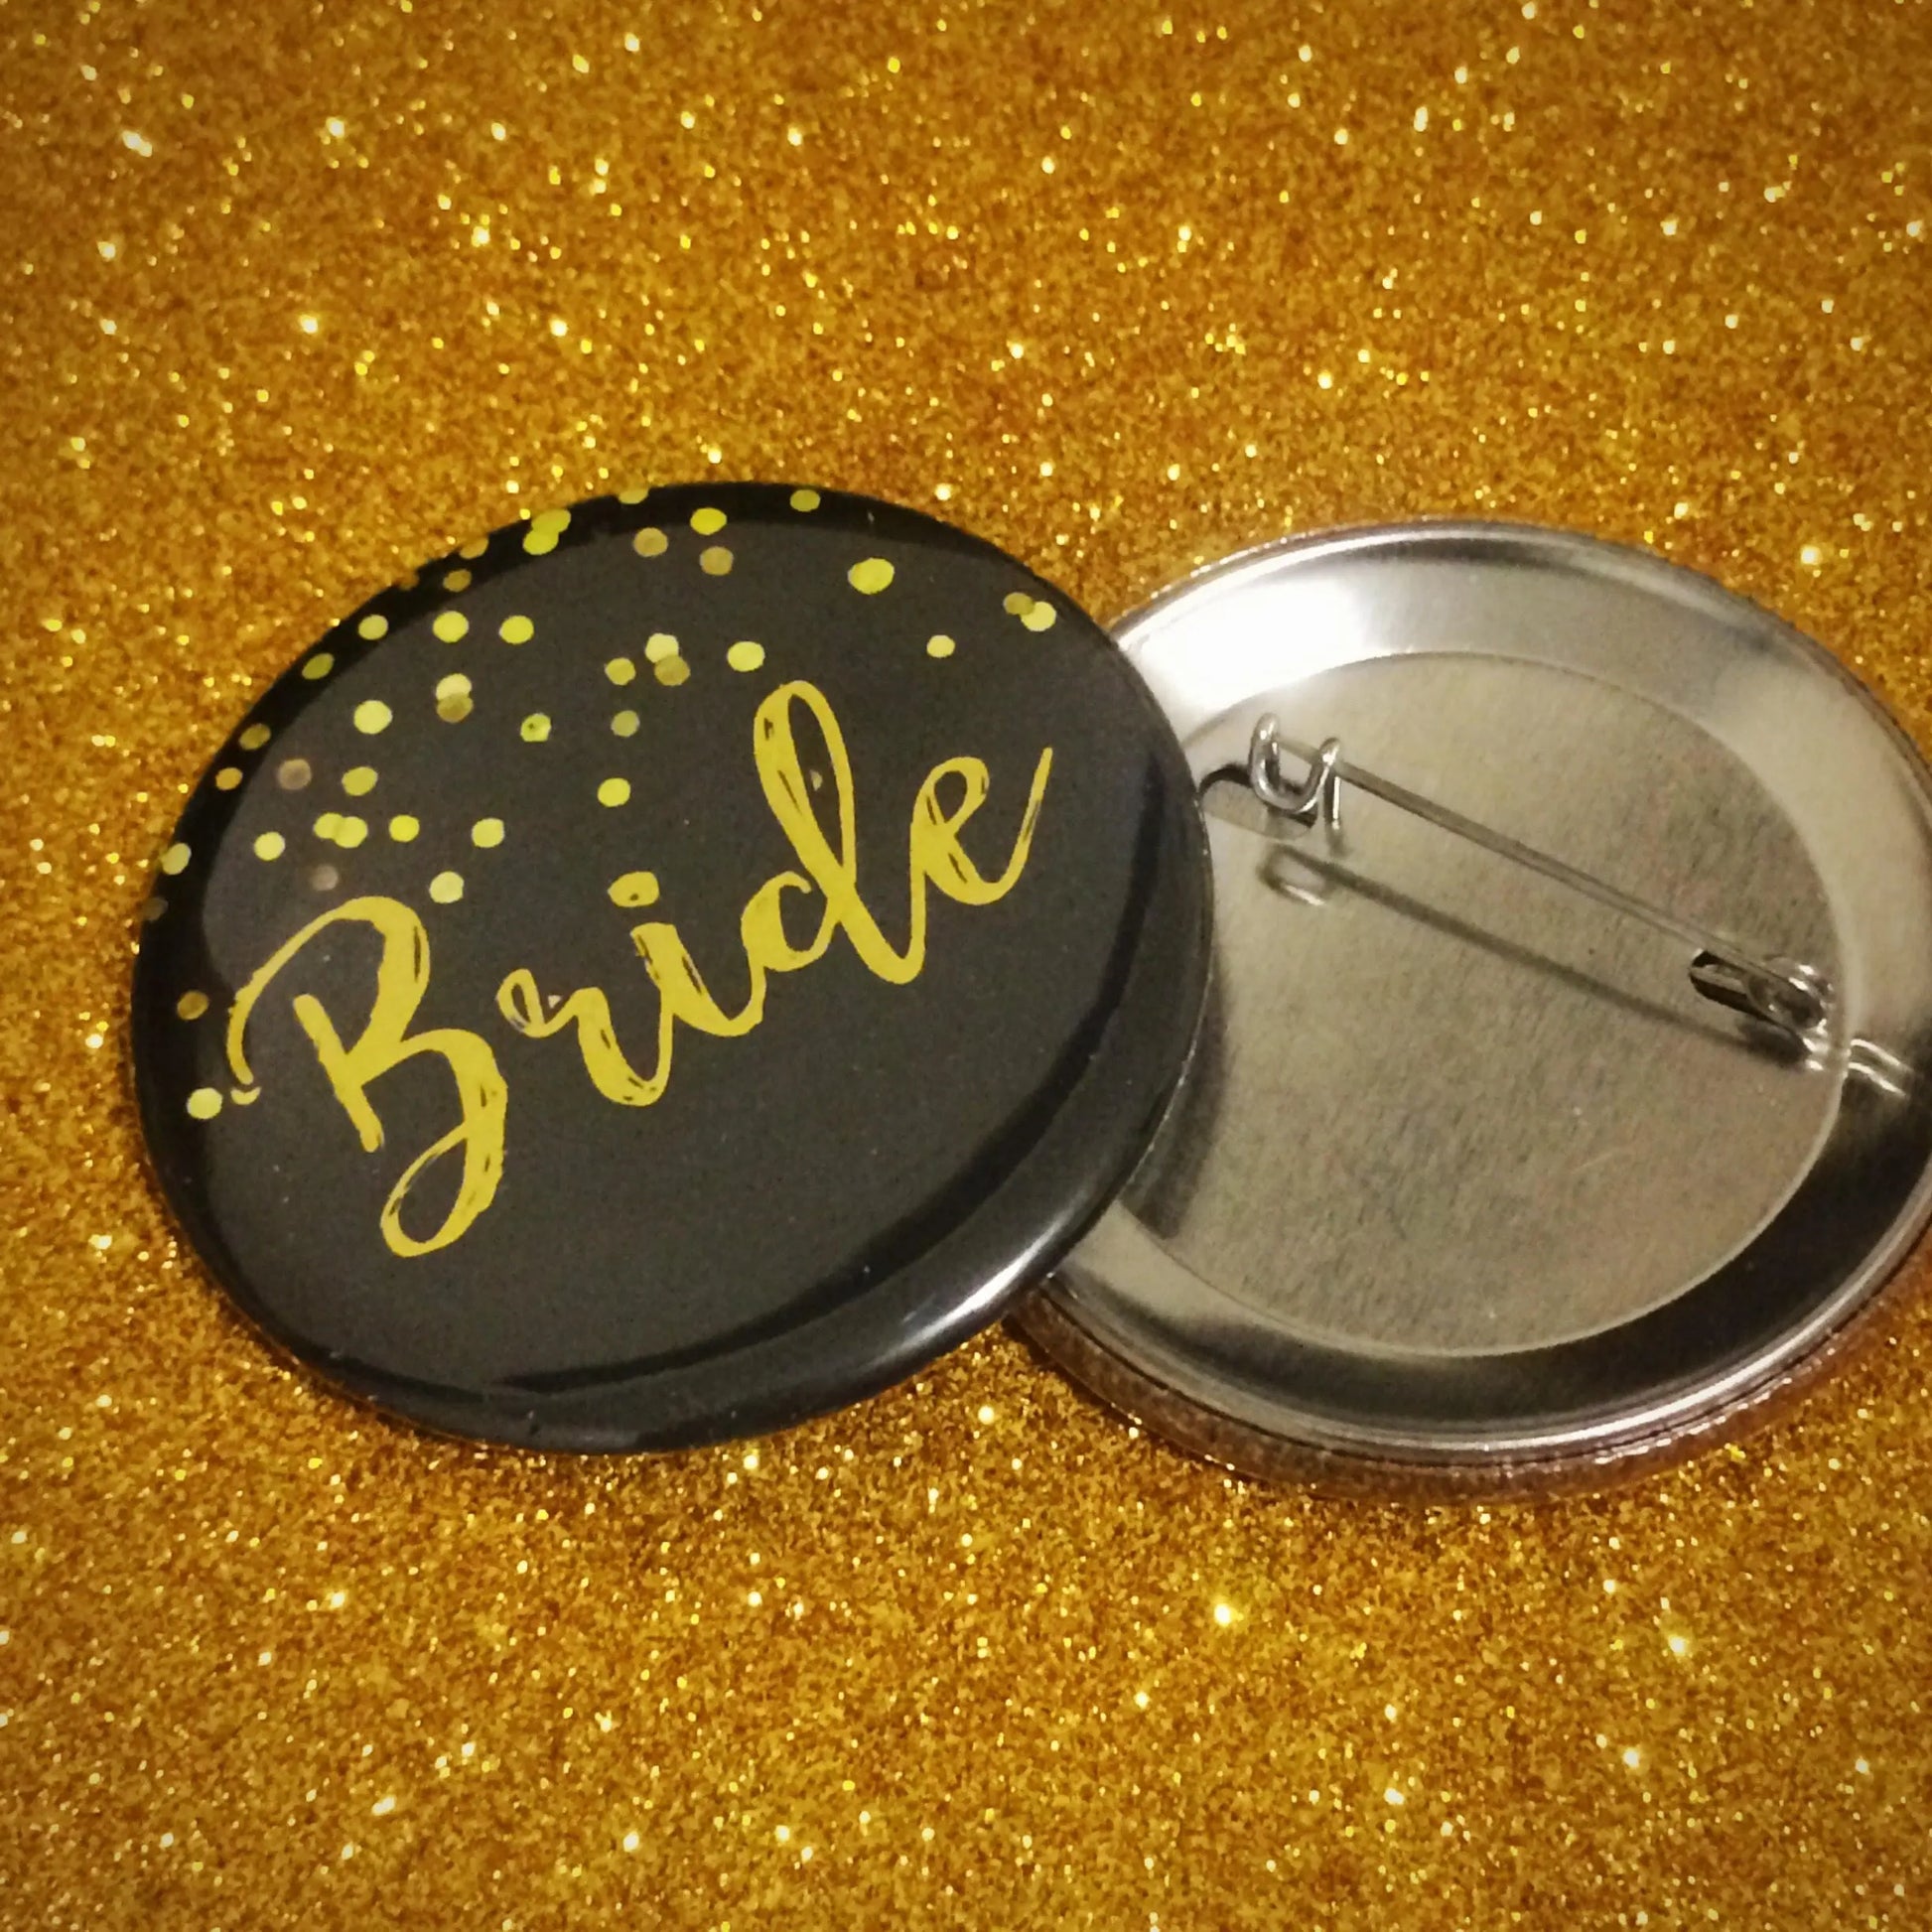 Bride Button Pins, Bride's Flock Black Gold Bride Squads Button Pins - 6 pieces